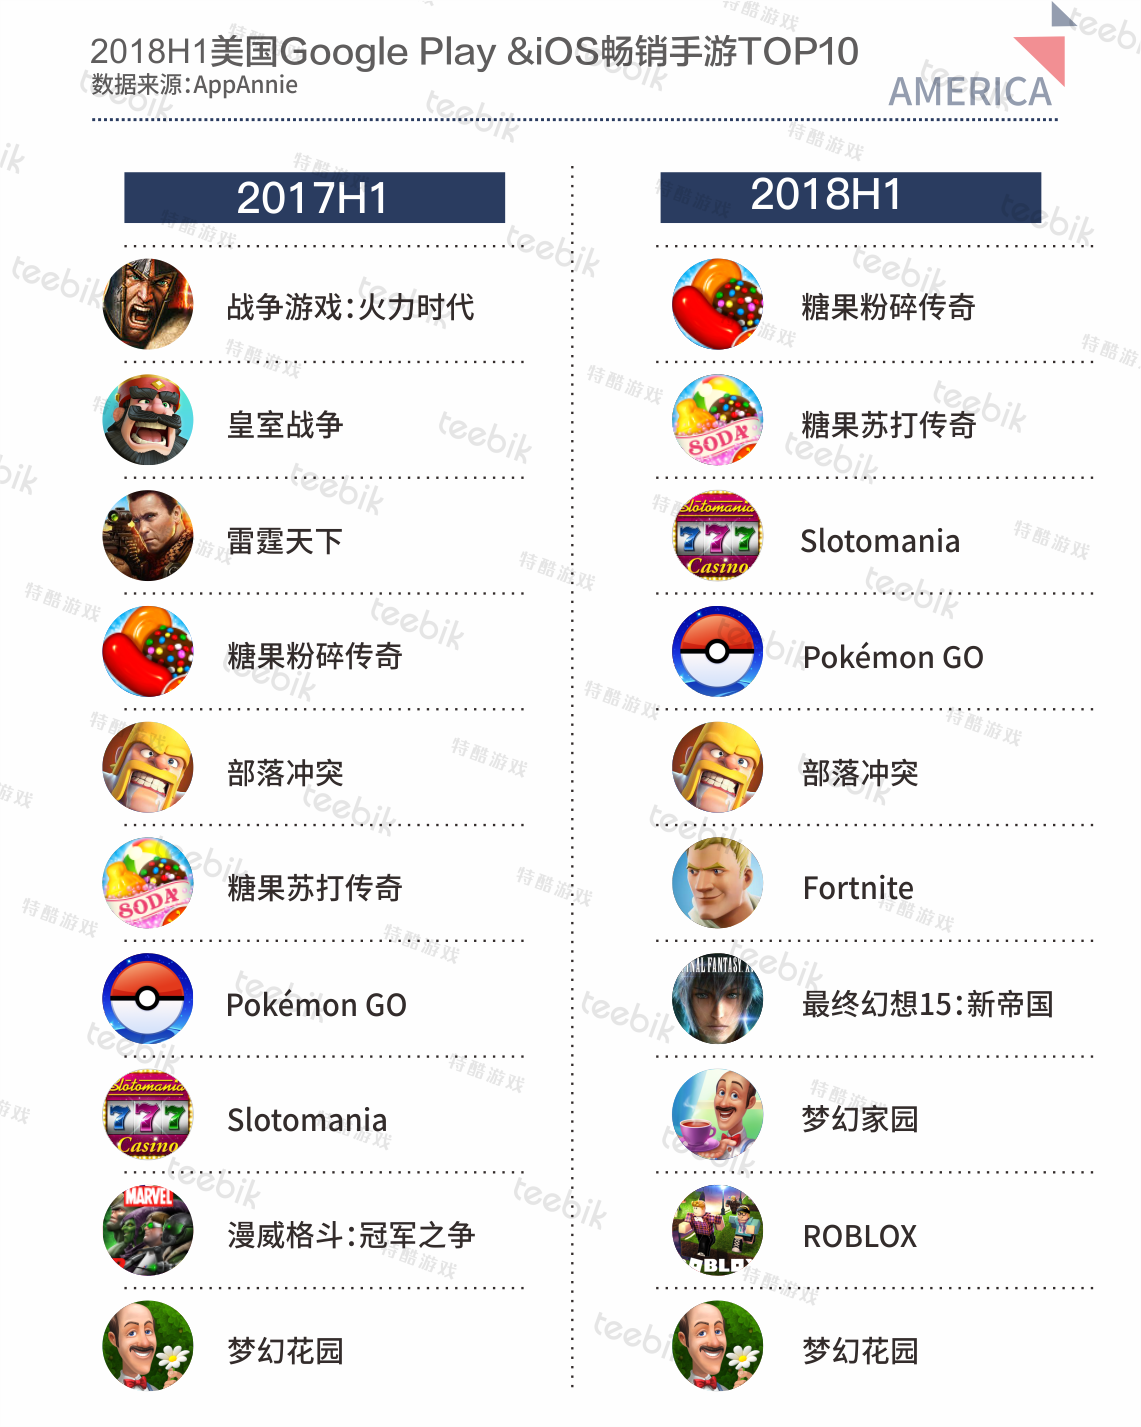 三消游戏领衔畅销榜单 《Pokémon GO》热度未减反增